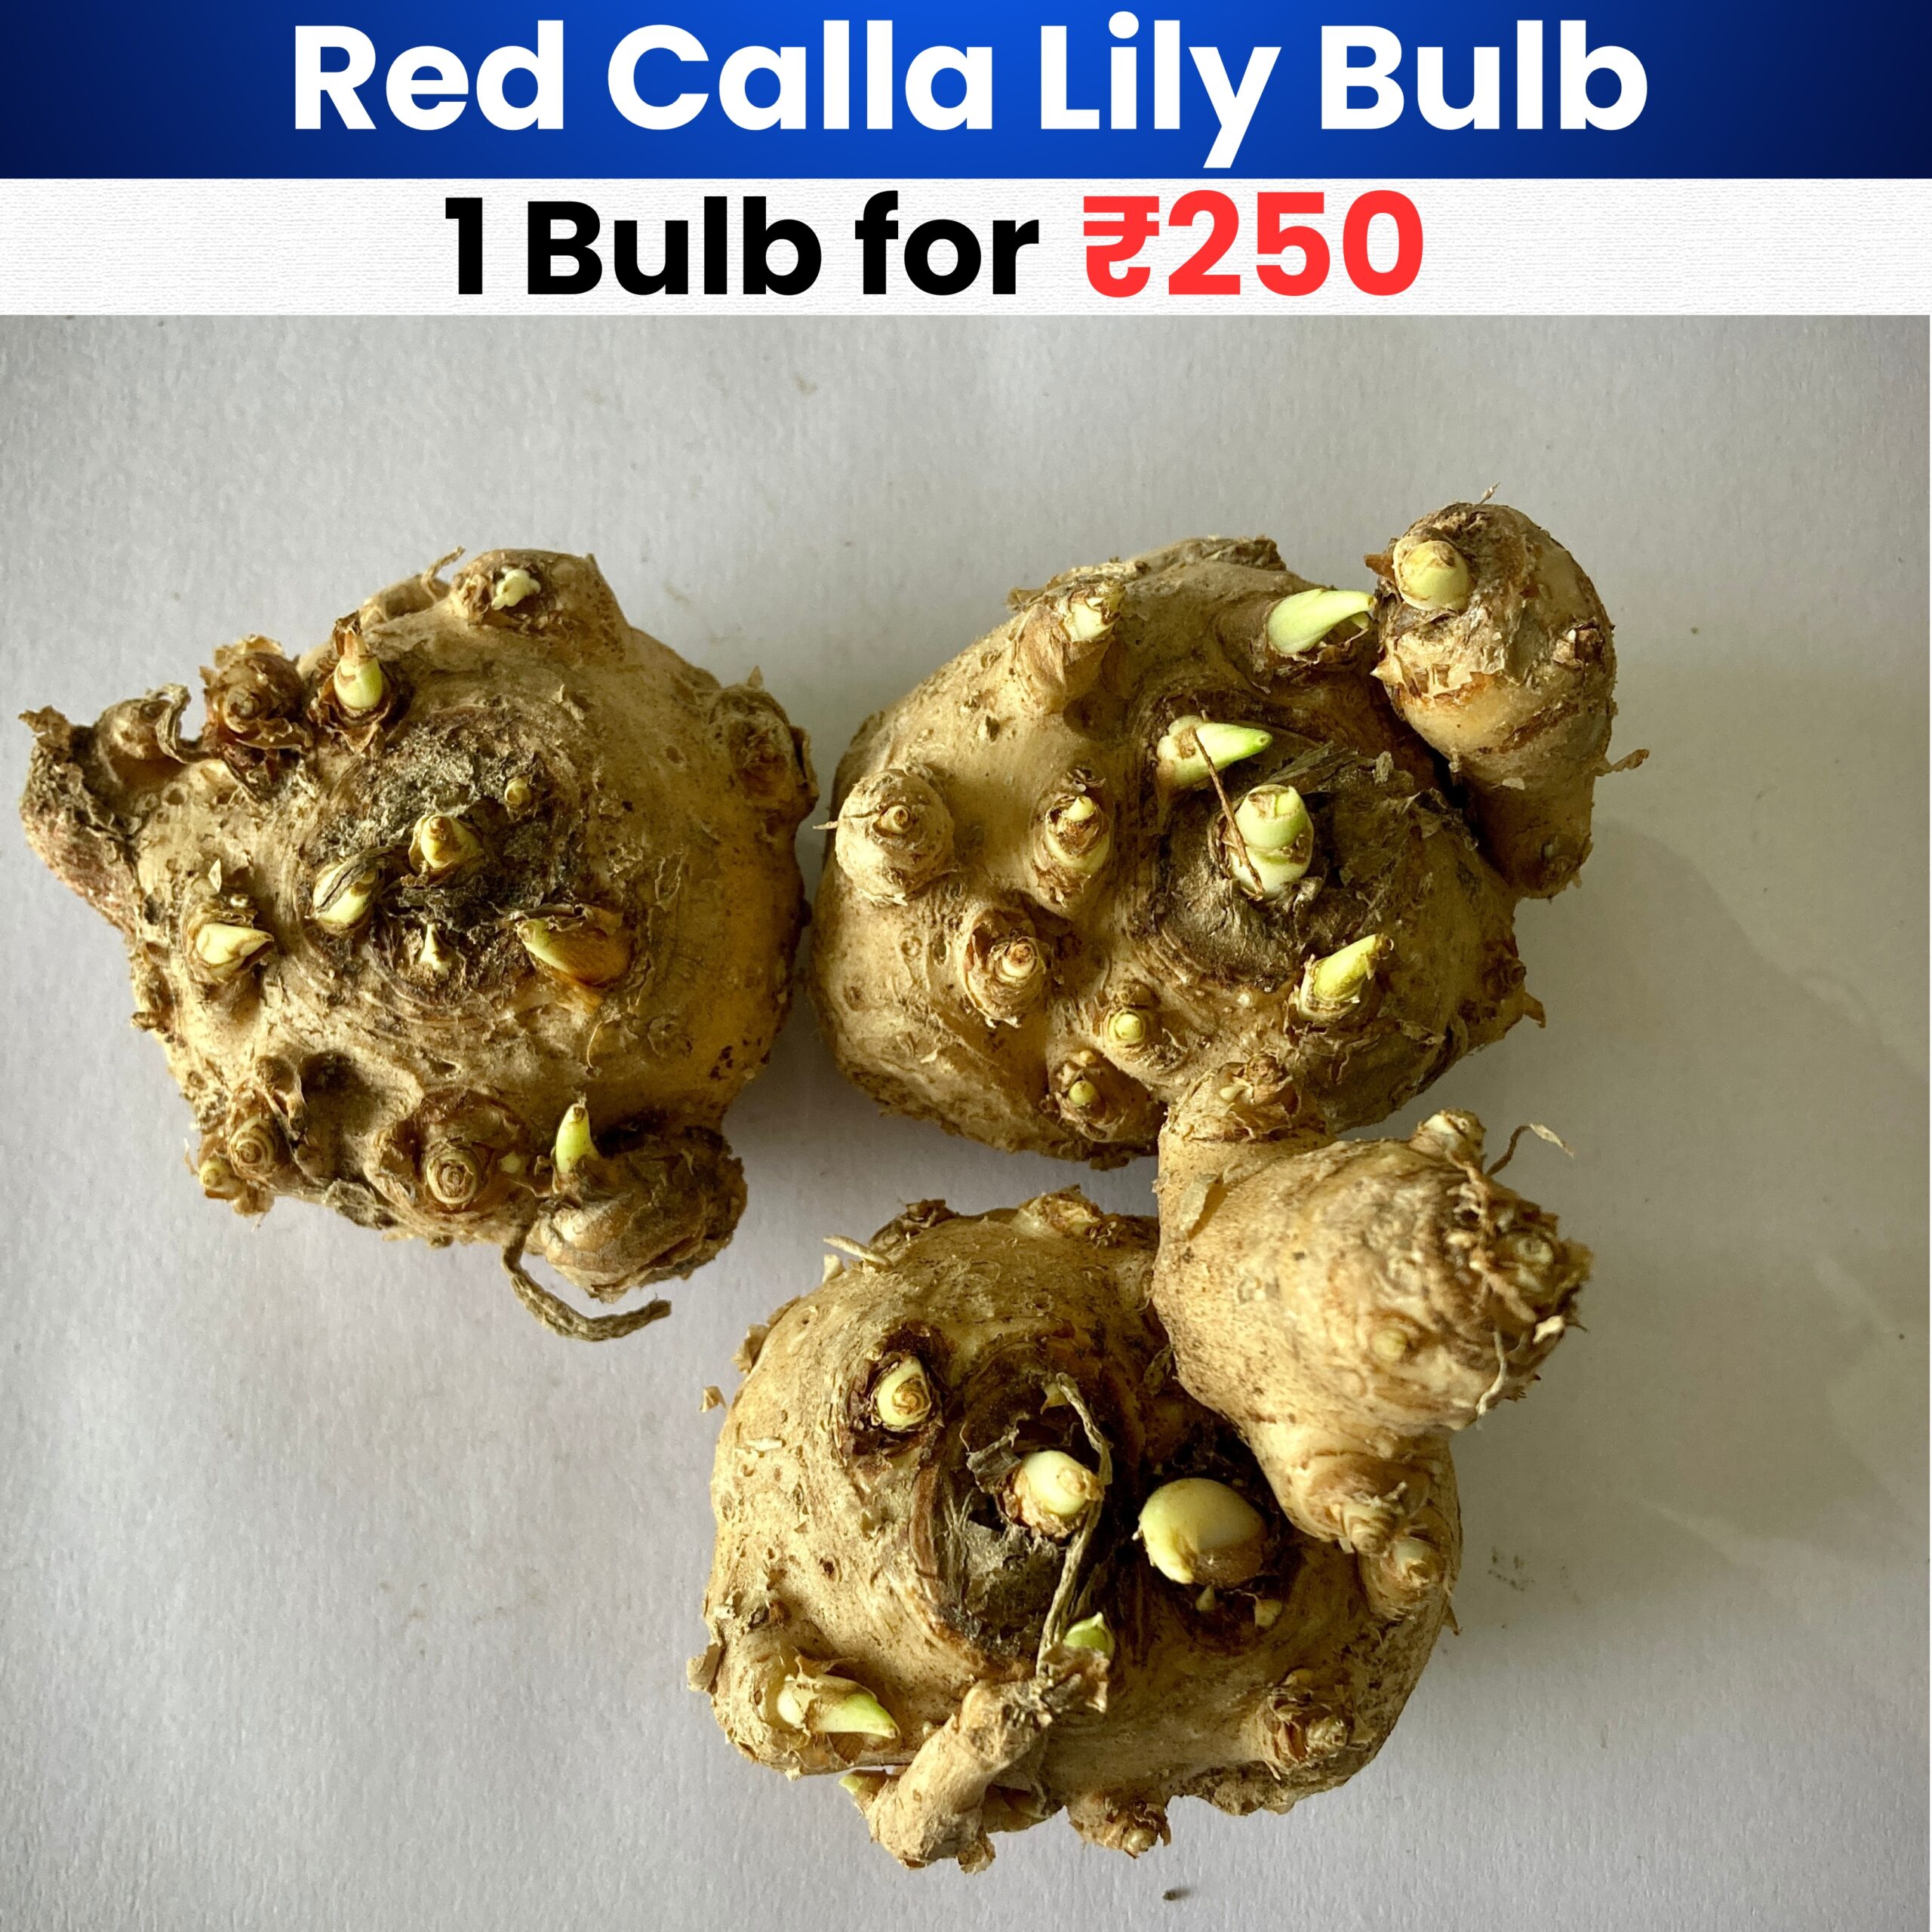 Red Calla Lily Bulb